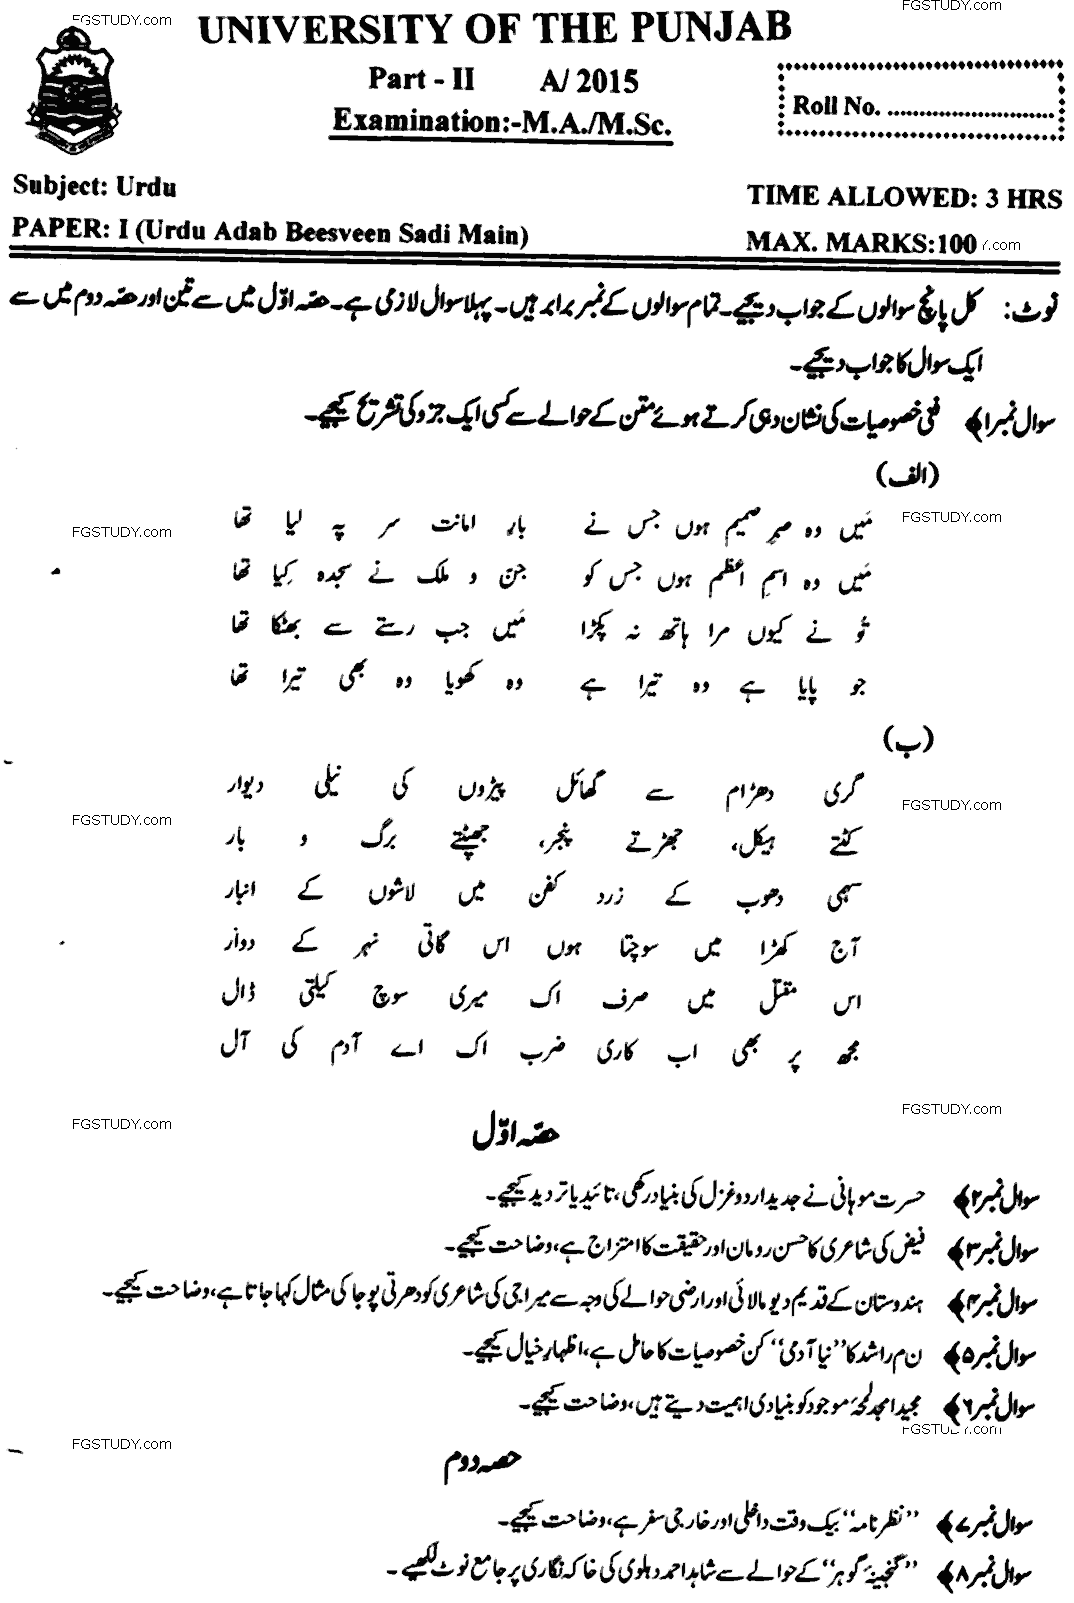 MA Part 2 Urdu Urdu Adab Beesveen Sadi Main Past Paper 2015 Punjab University